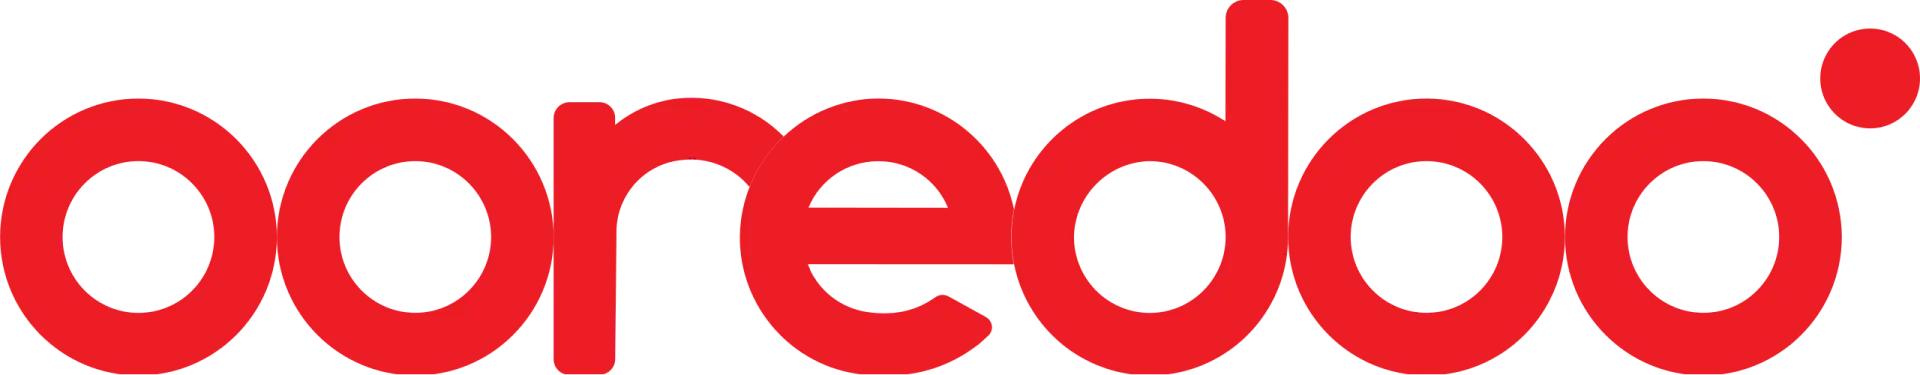 Ooredoo_logo